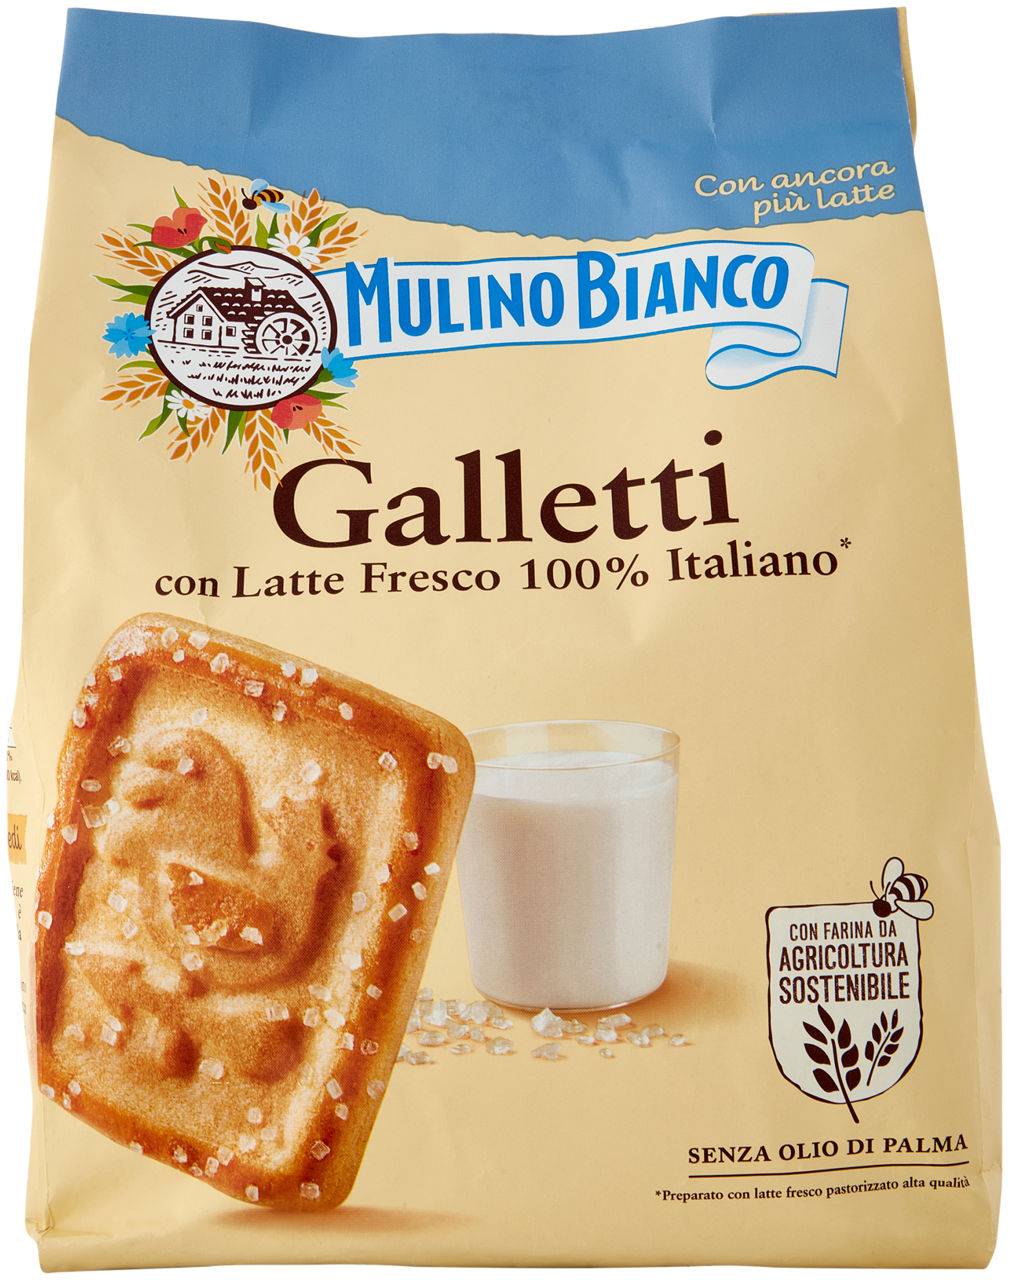 Biscotti Galletti con Latte Fresco 800 g - Immagine 01